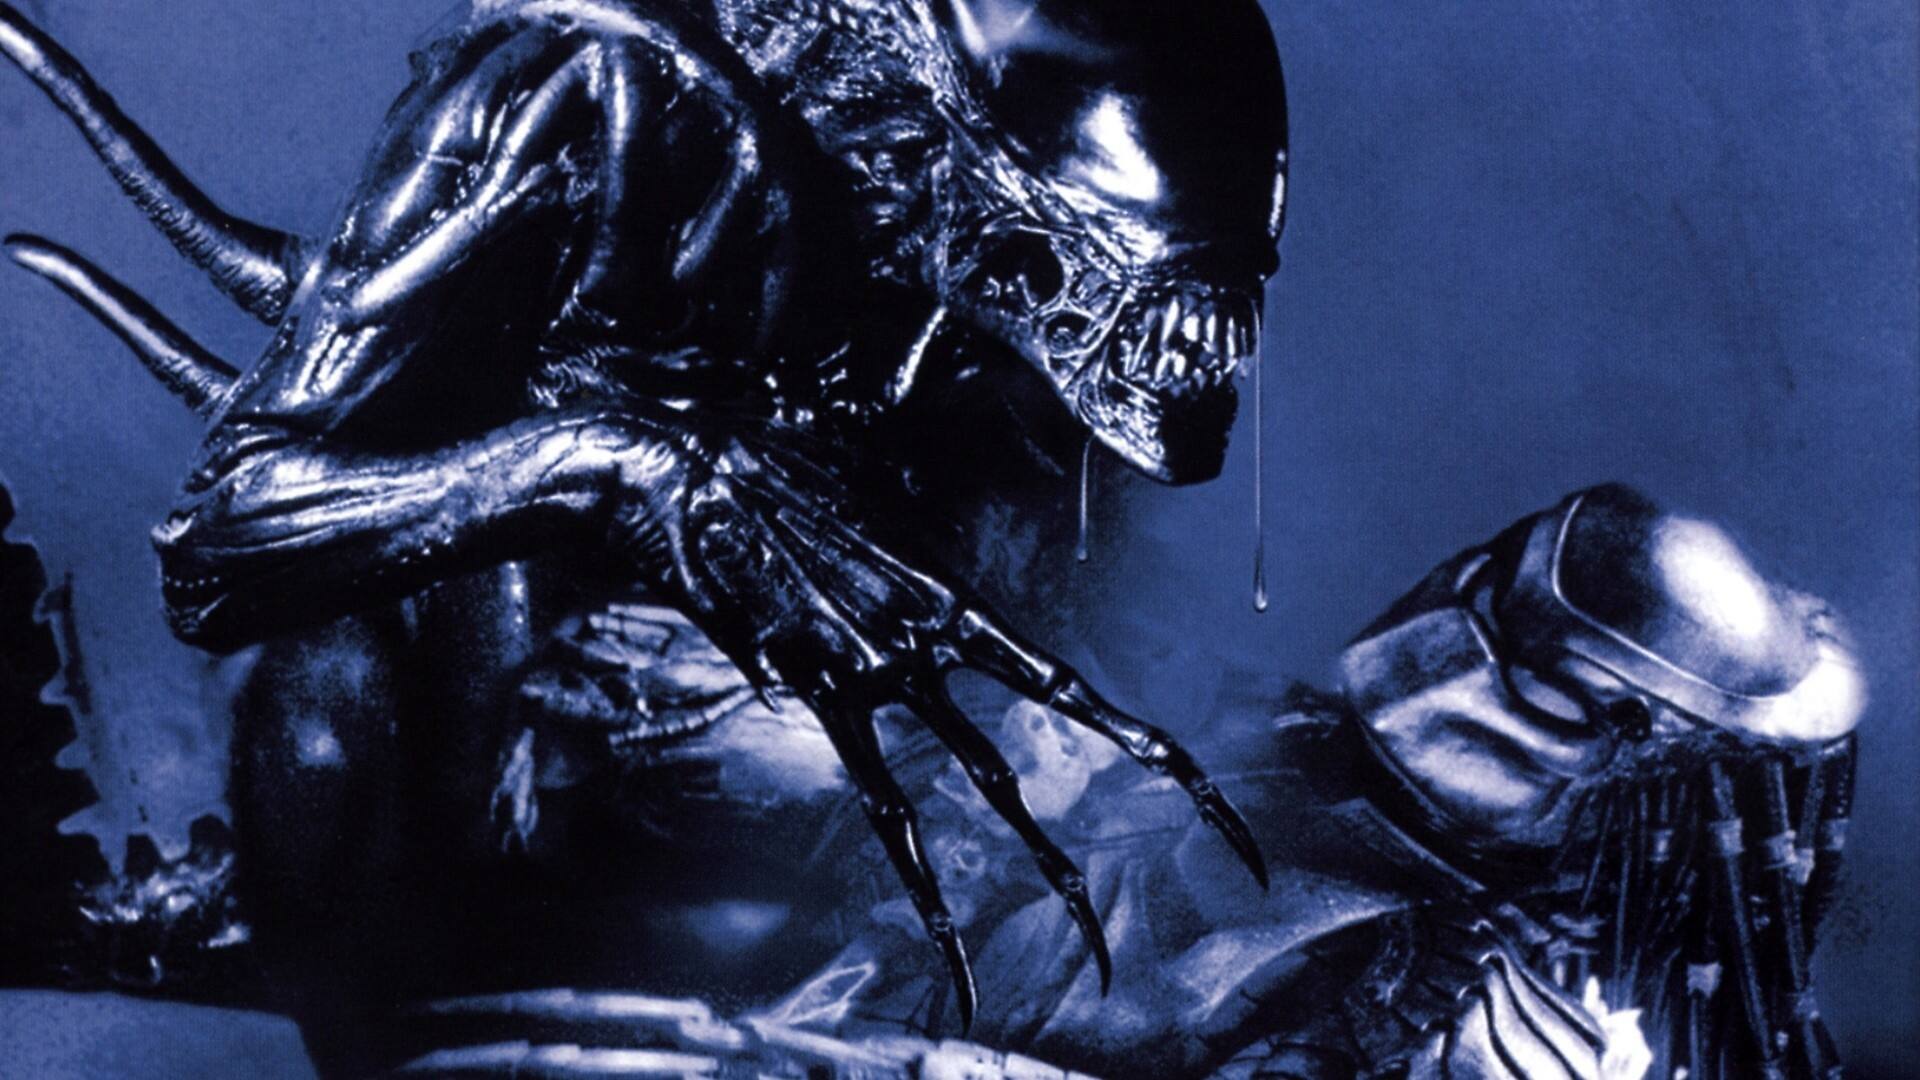 download alien vs predator 2004 full movie in hindi